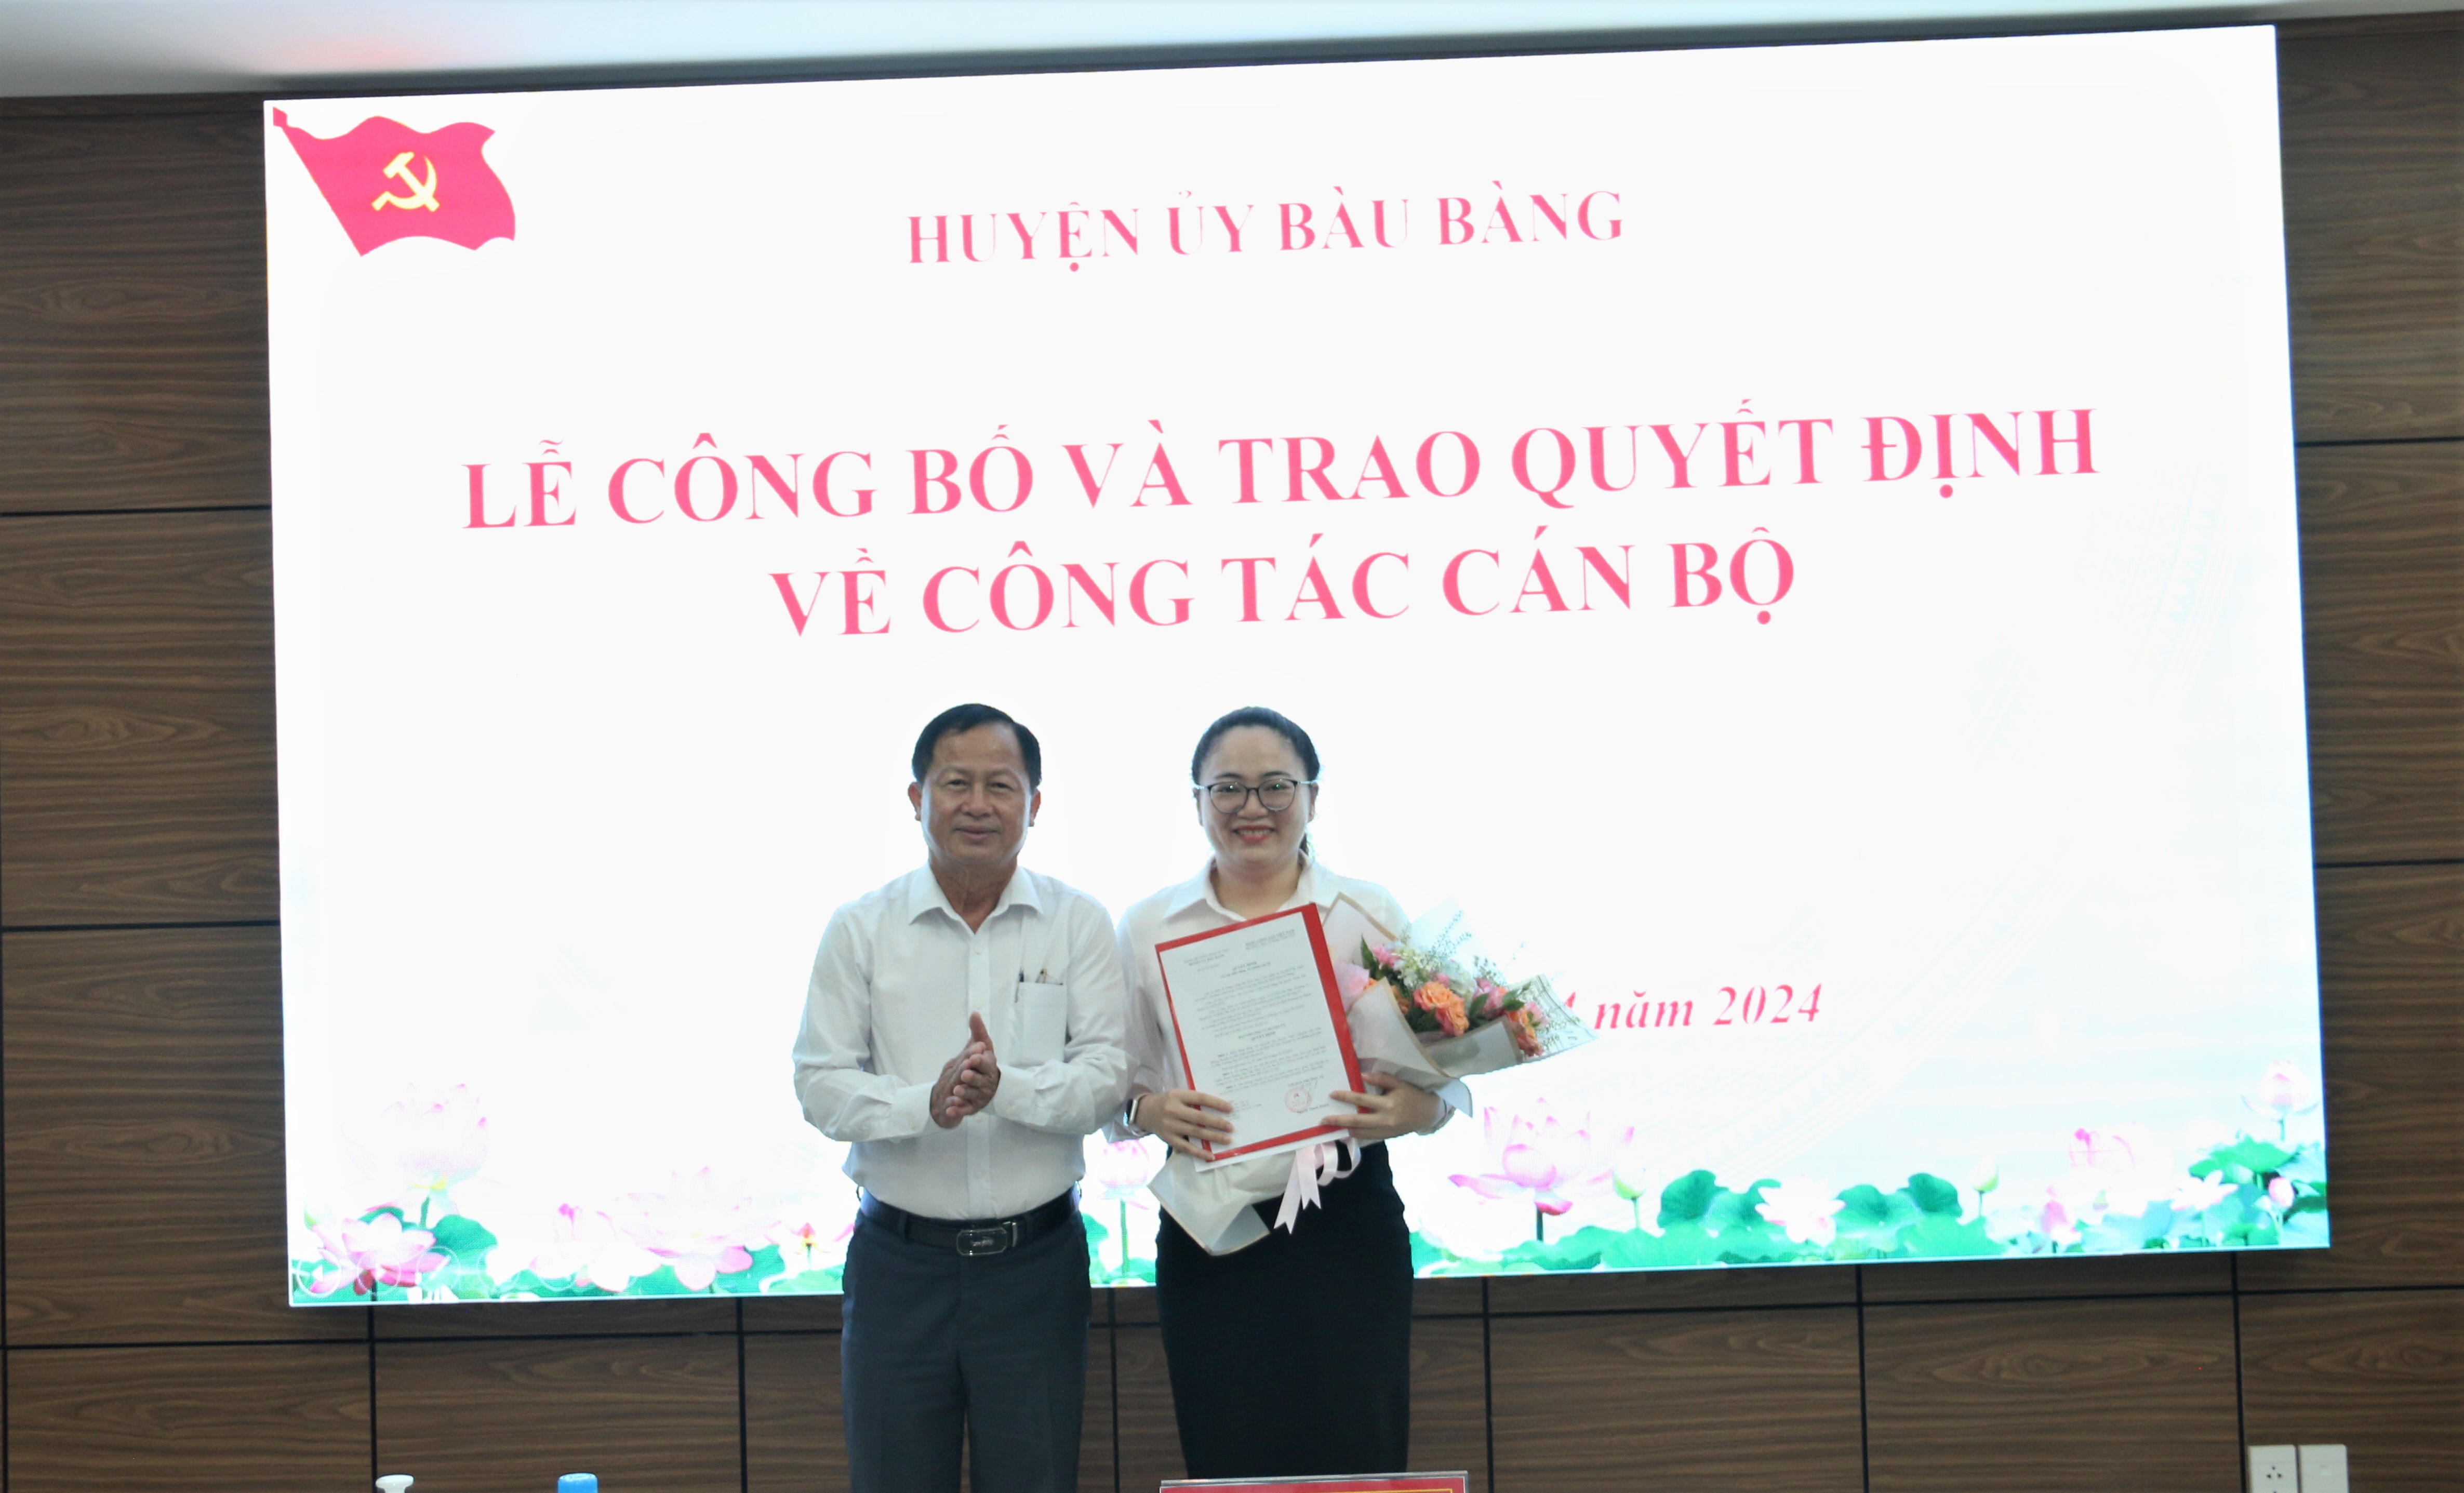 Huyện ủy Bàu Bàng tổ chức lễ công bố Quyết định về công tác cán bộ